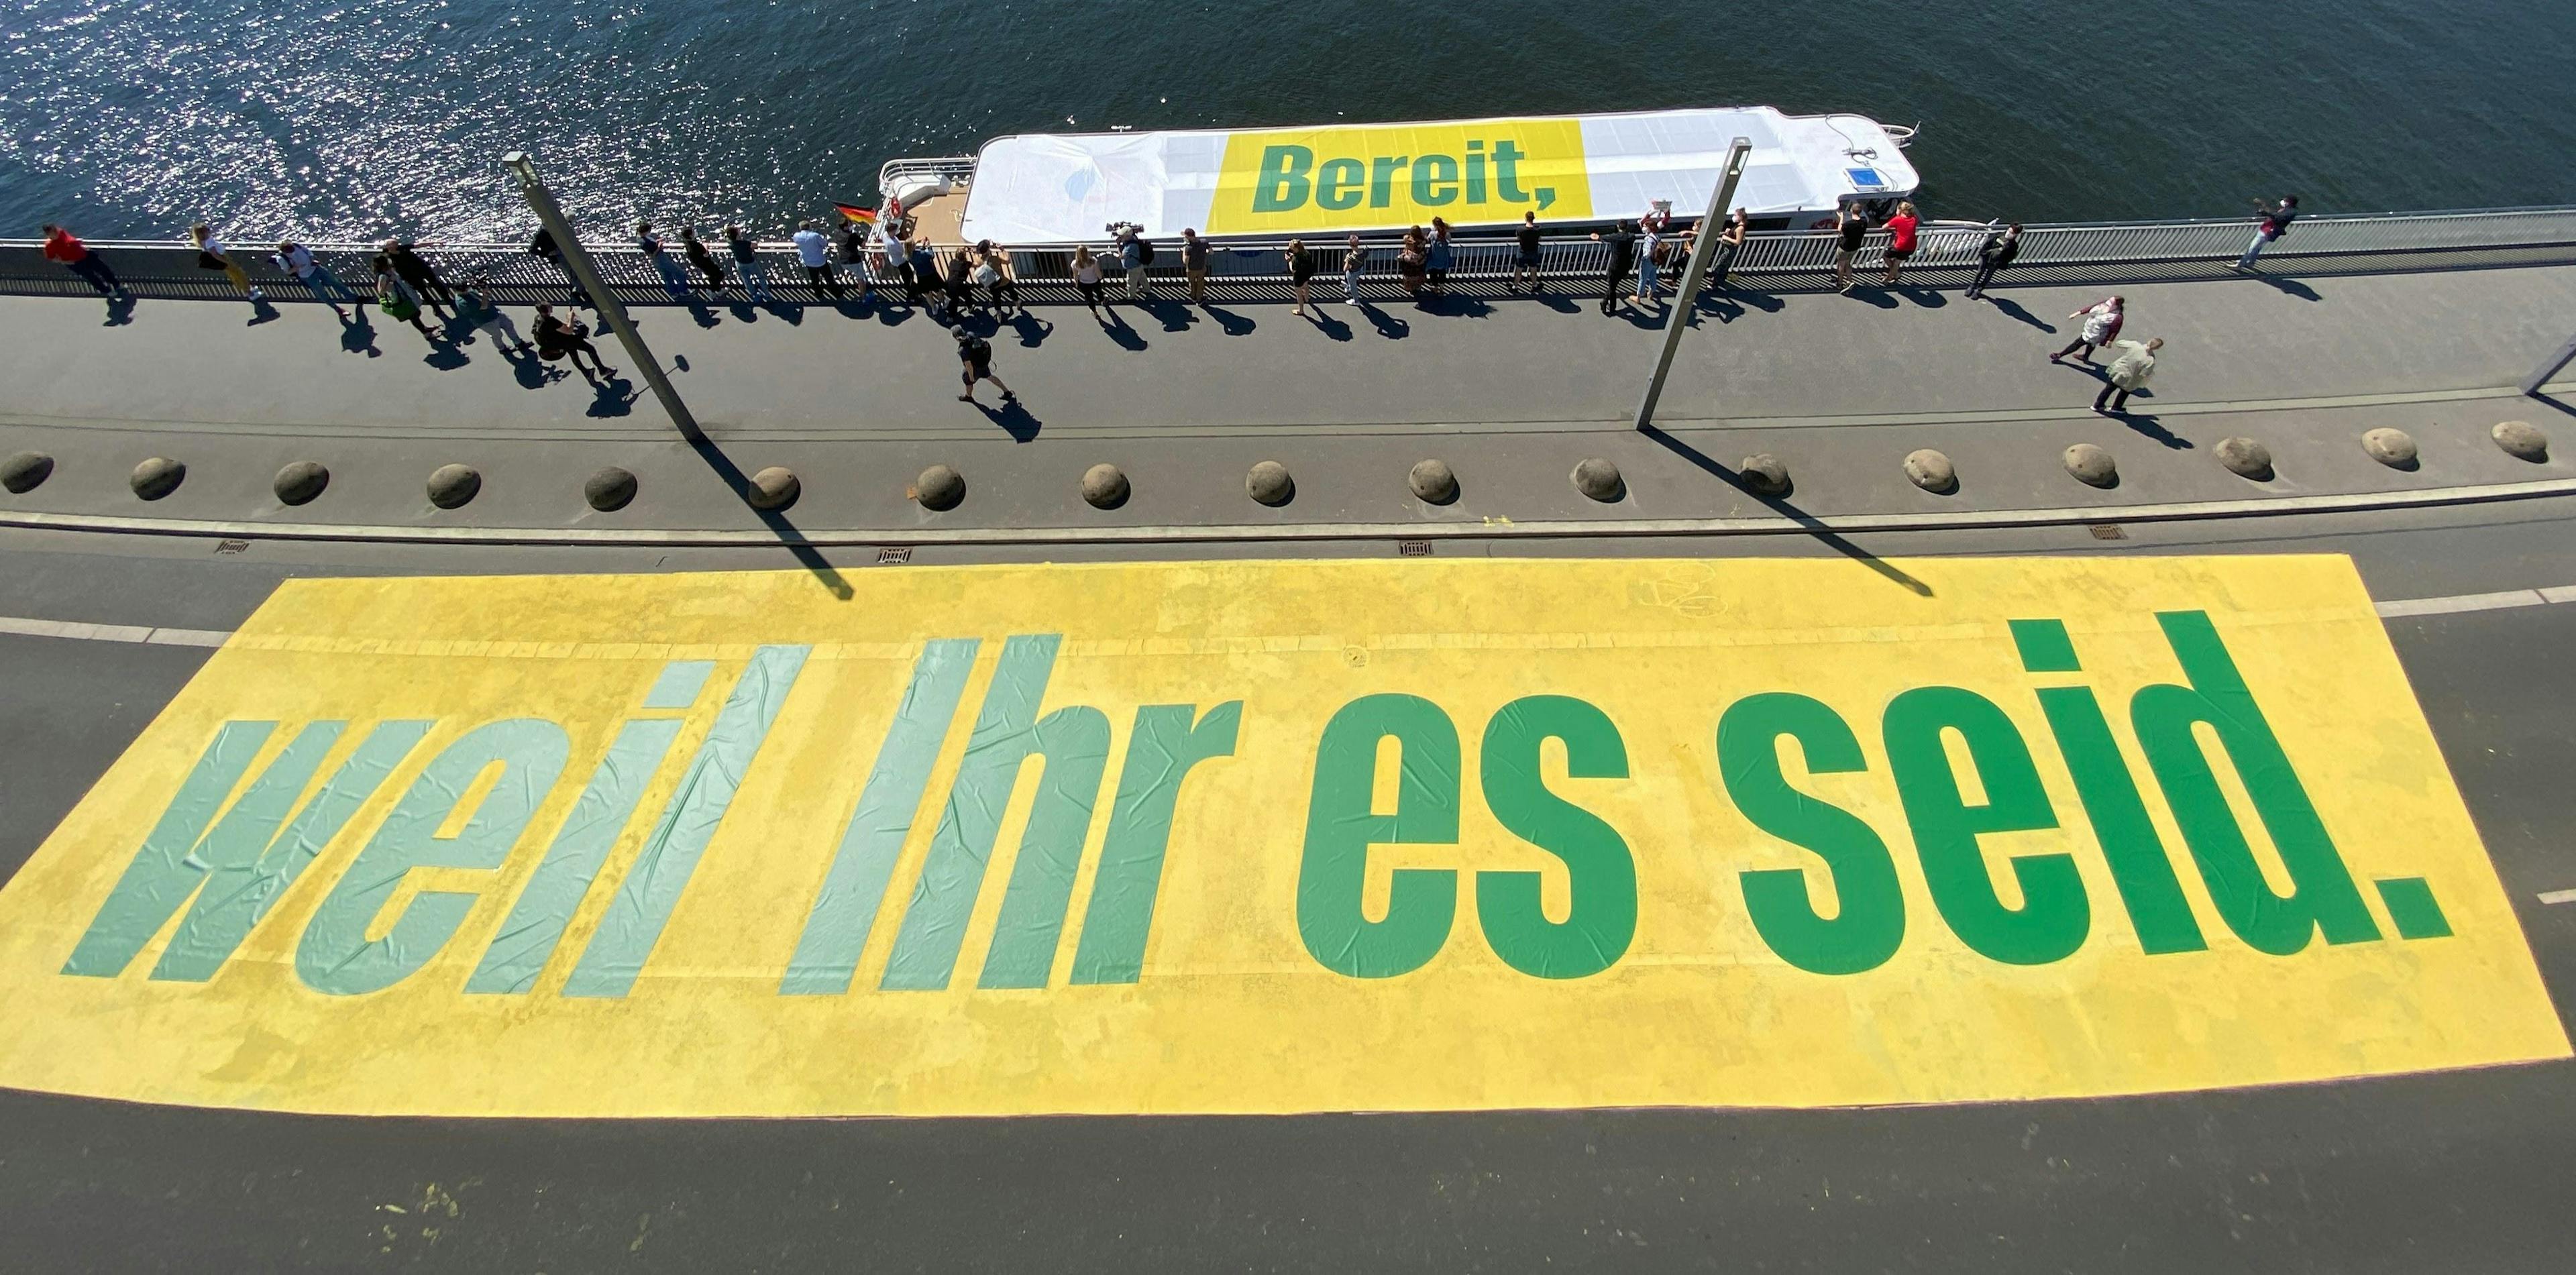 Ein Schiff steht parallel zu einer Brücke. Auf dem Schiff steht in grünen Buchstaben auf gelbem Hintergrund: "Bereit,", auf der Brücke in den selben Farben steht "weil Ihr es seid."